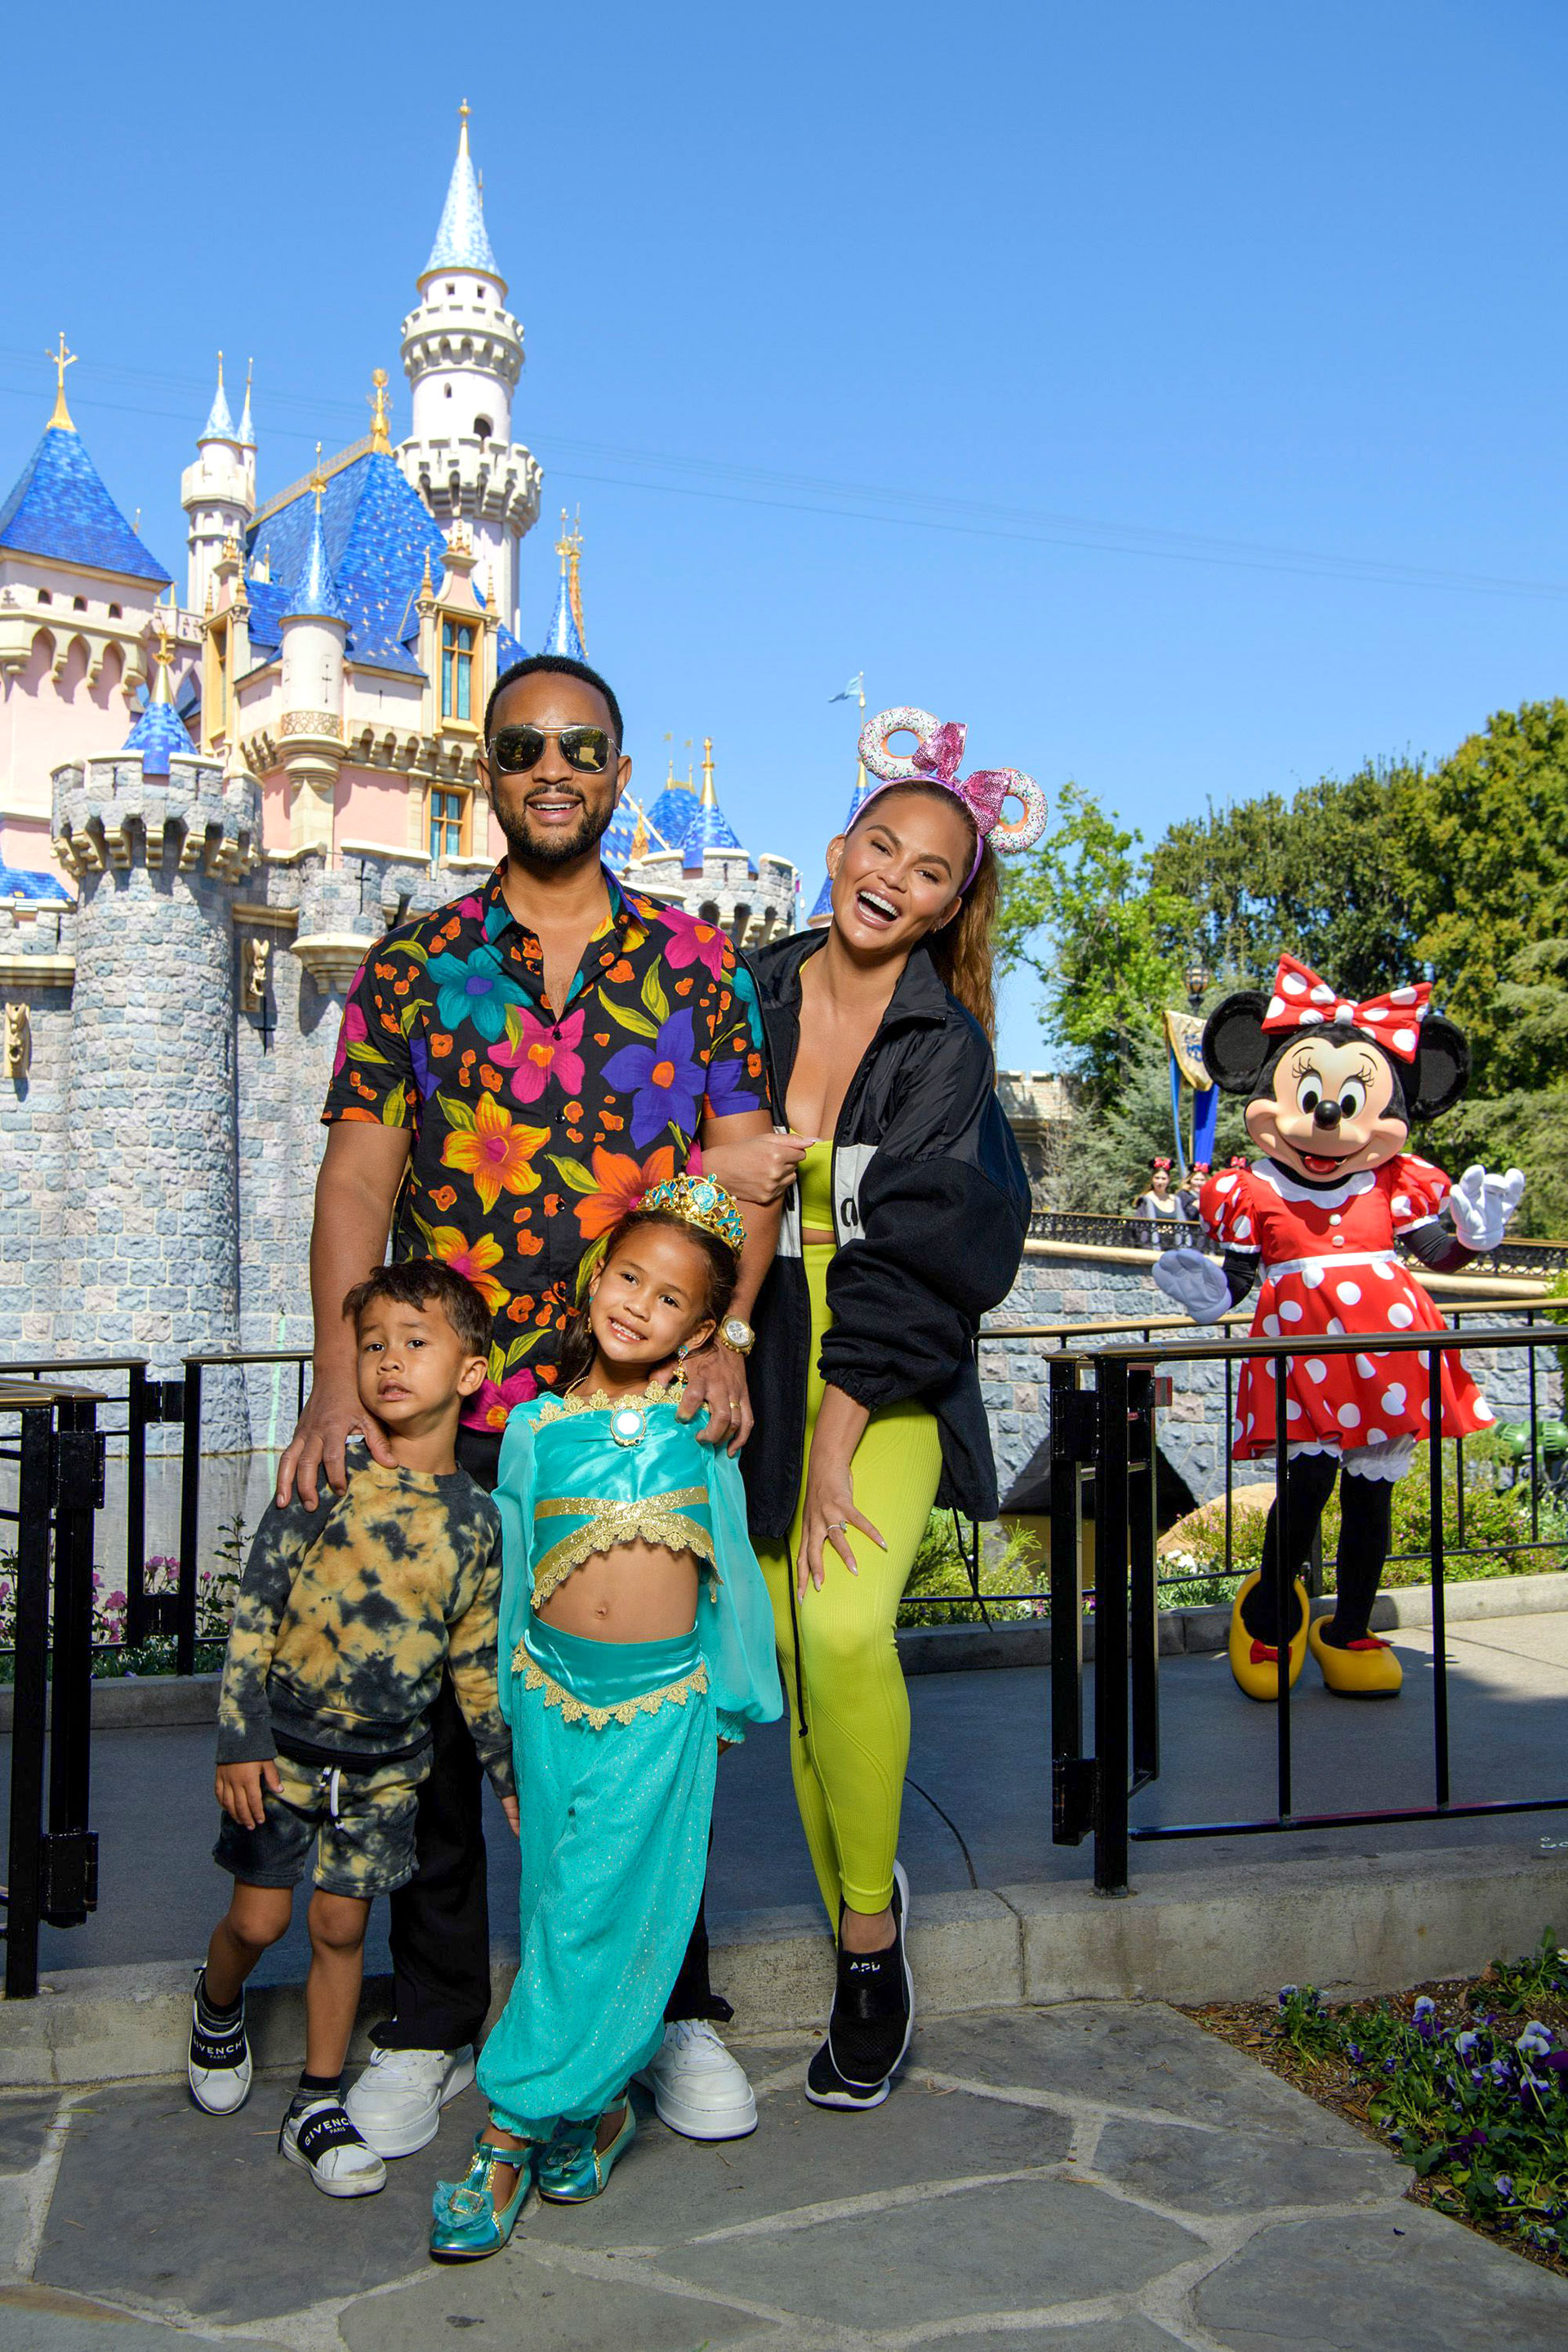 Festejo en familia. Chrissy Teigen y John Legend viajaron a Disney para celebrar el cumpleaños de su hija Luna, quien cumplió seis años. Allí disfrutaron de las distintas atracciones que proponen los parques de diversiones y los juegos